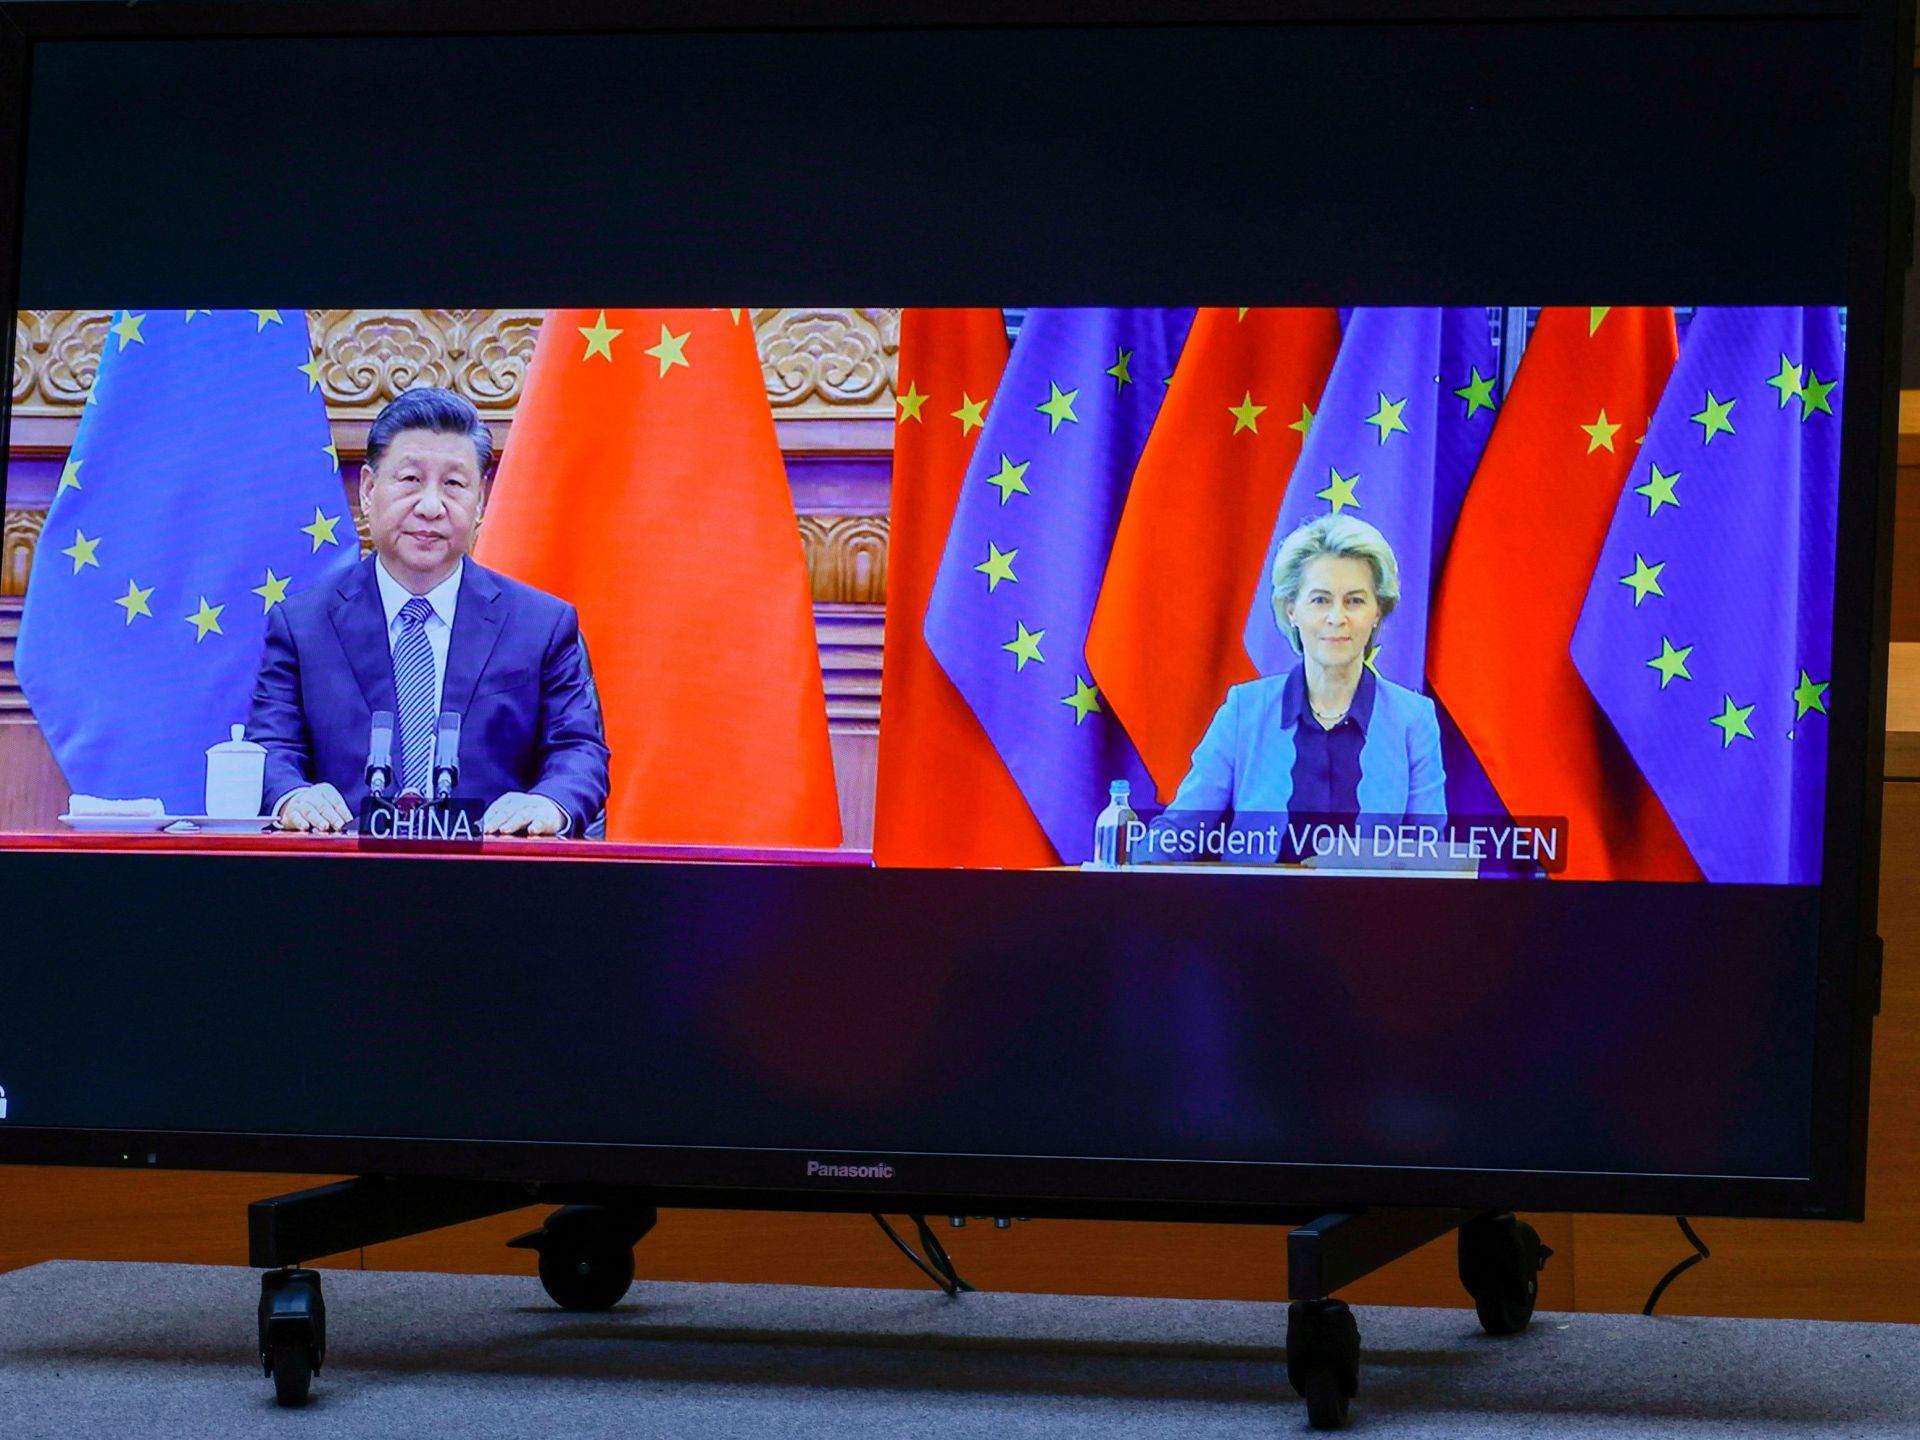 قمة صينية أوروبية في بكين تركز على الخلل التجاري بين الشريكين | أخبار – البوكس نيوز